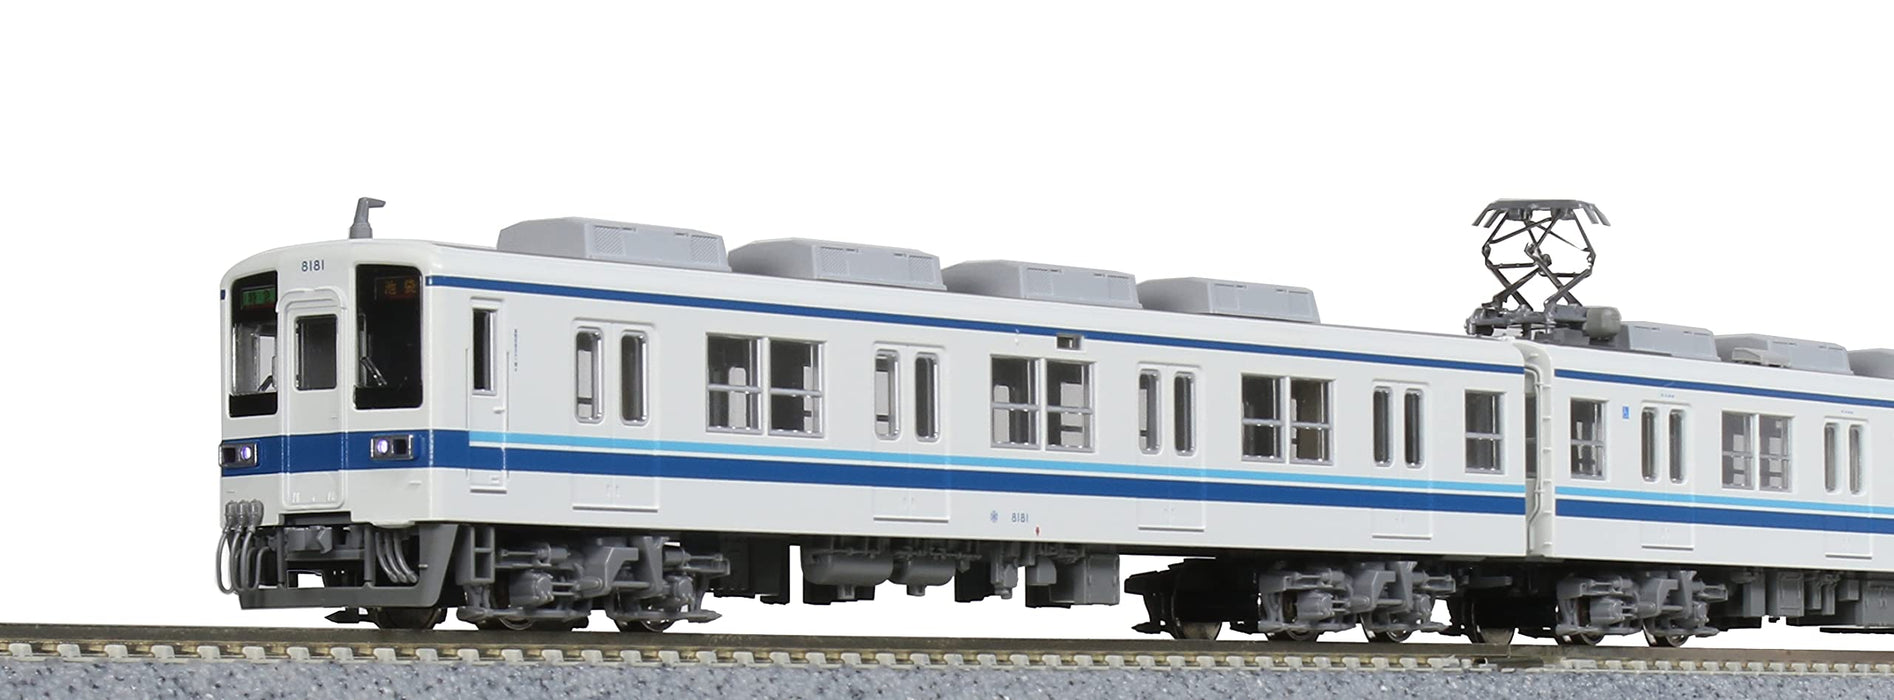 Kato N Gauge 10-1650 Tobu Railway série 8000, modèle de train à 8 voitures de la ligne Tojo tardive